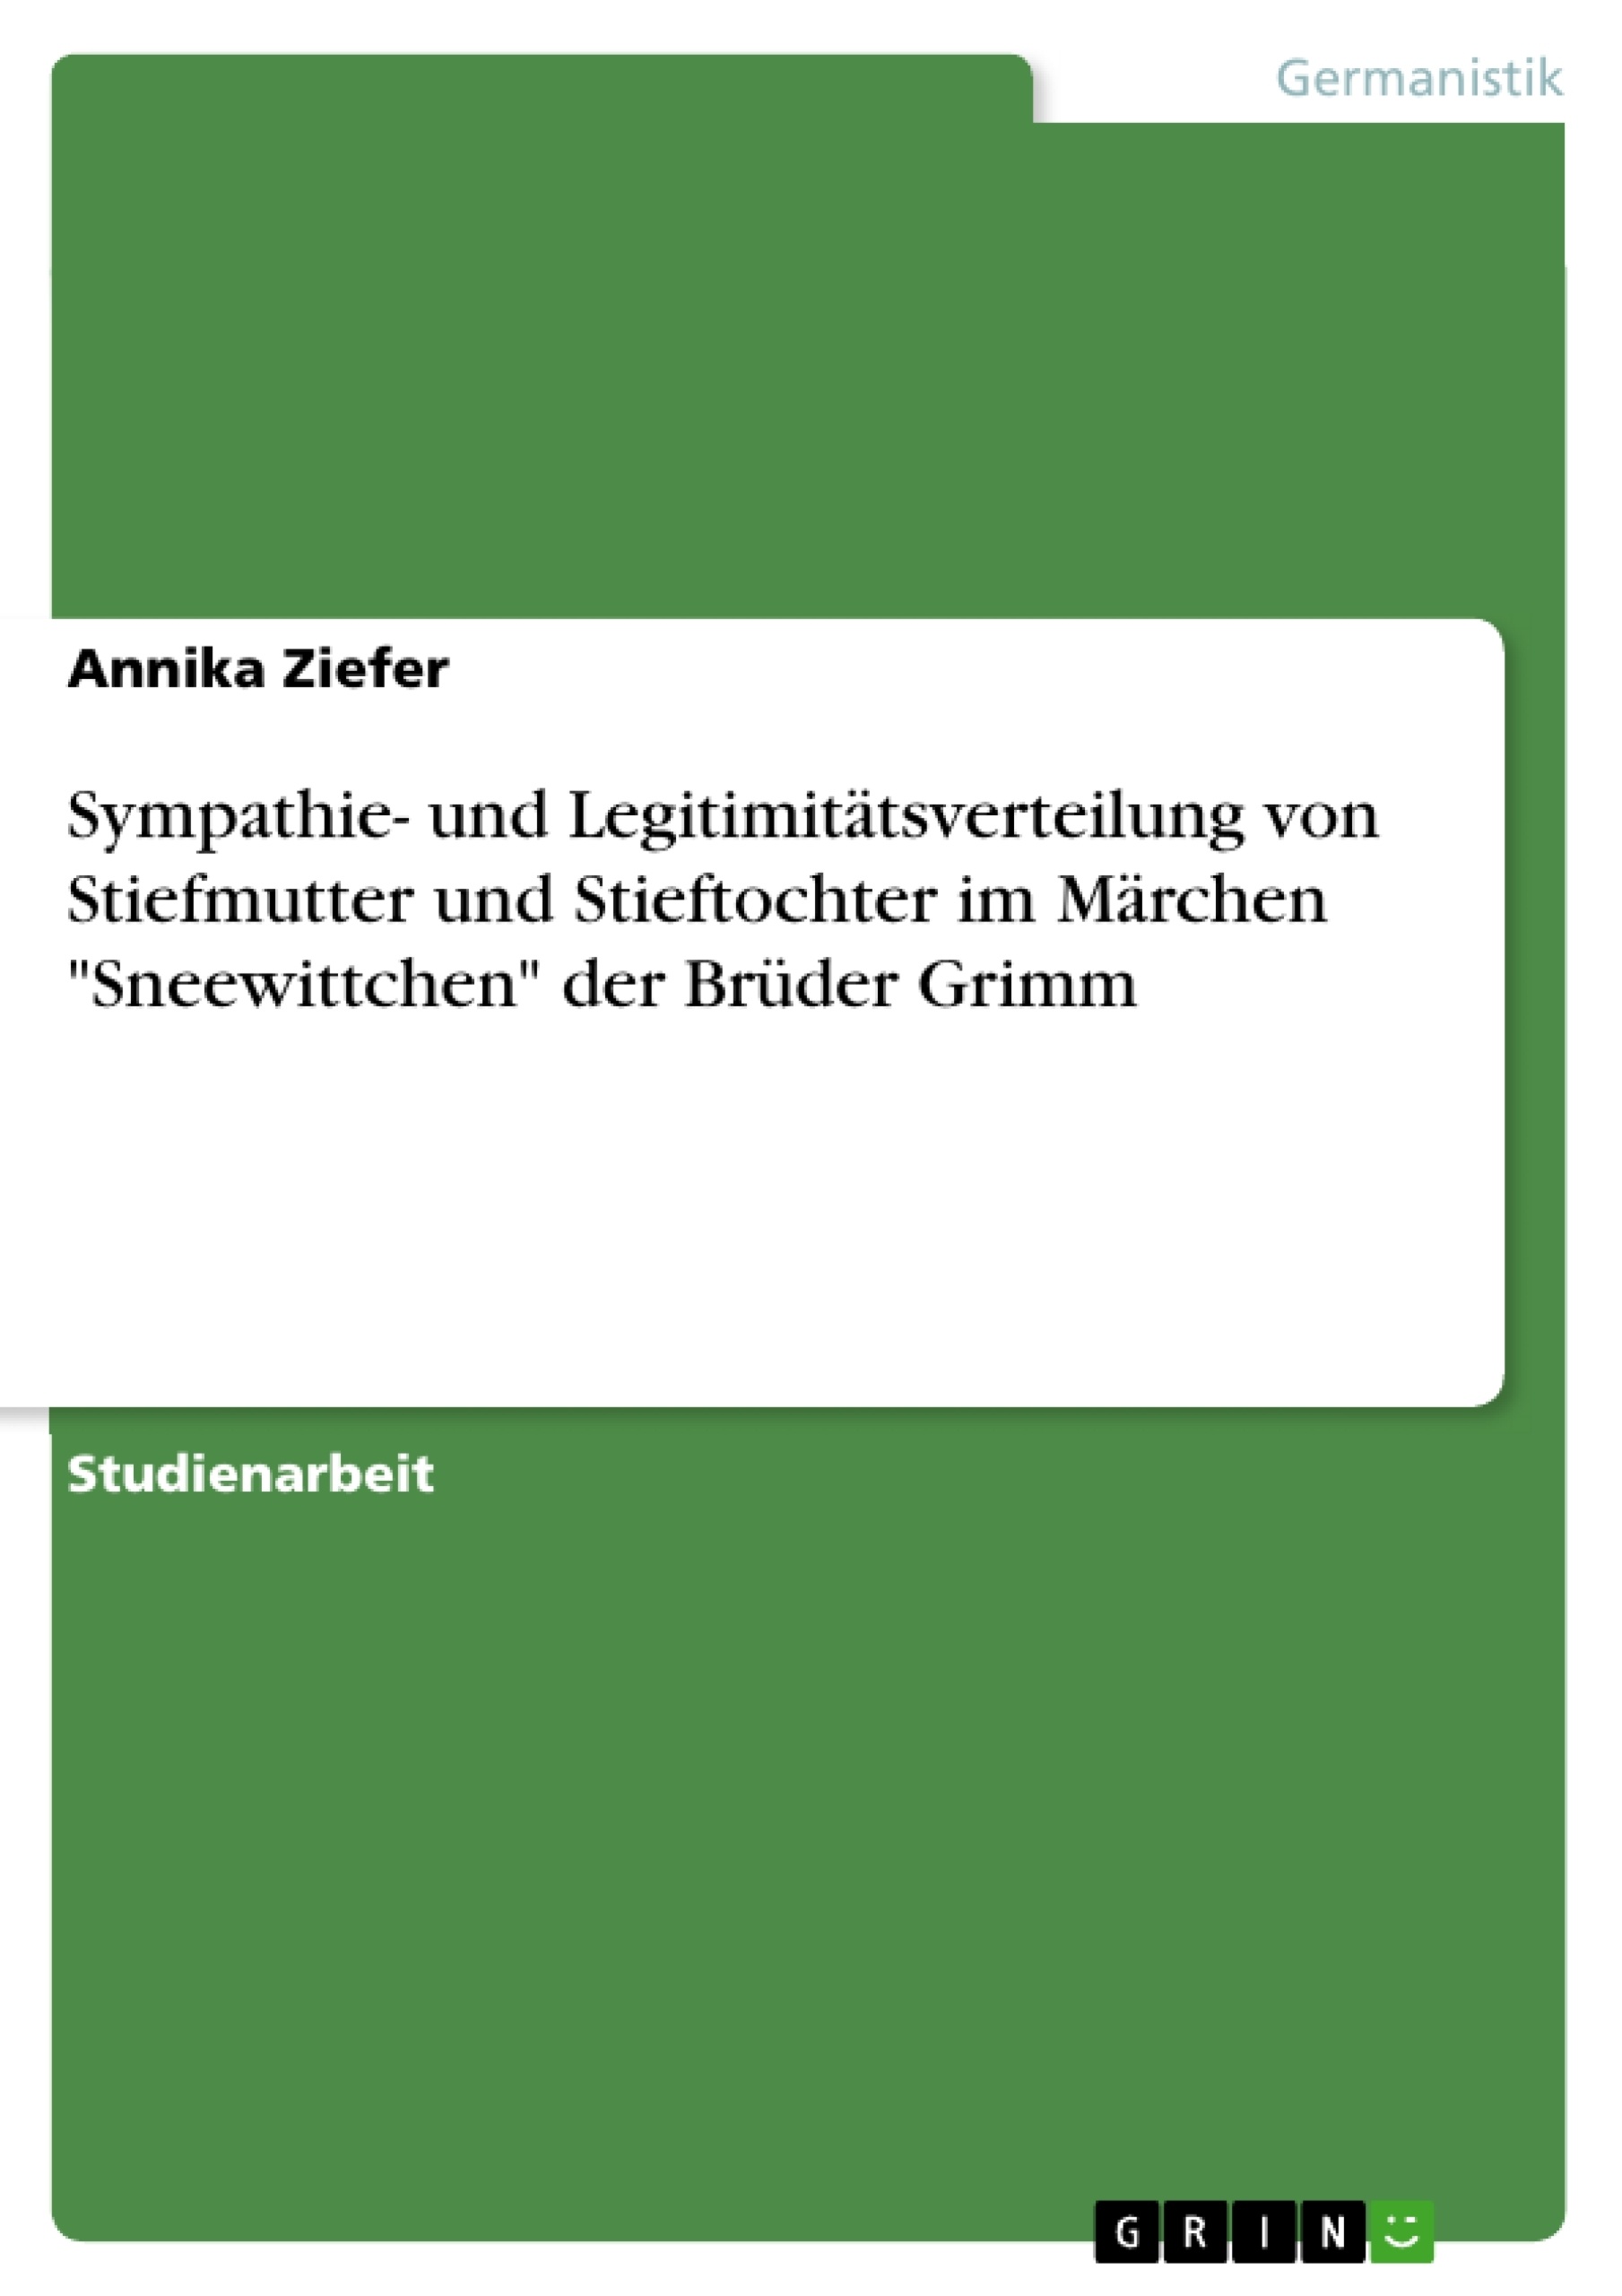 Título: Sympathie- und Legitimitätsverteilung von Stiefmutter und Stieftochter im Märchen "Sneewittchen" der Brüder Grimm